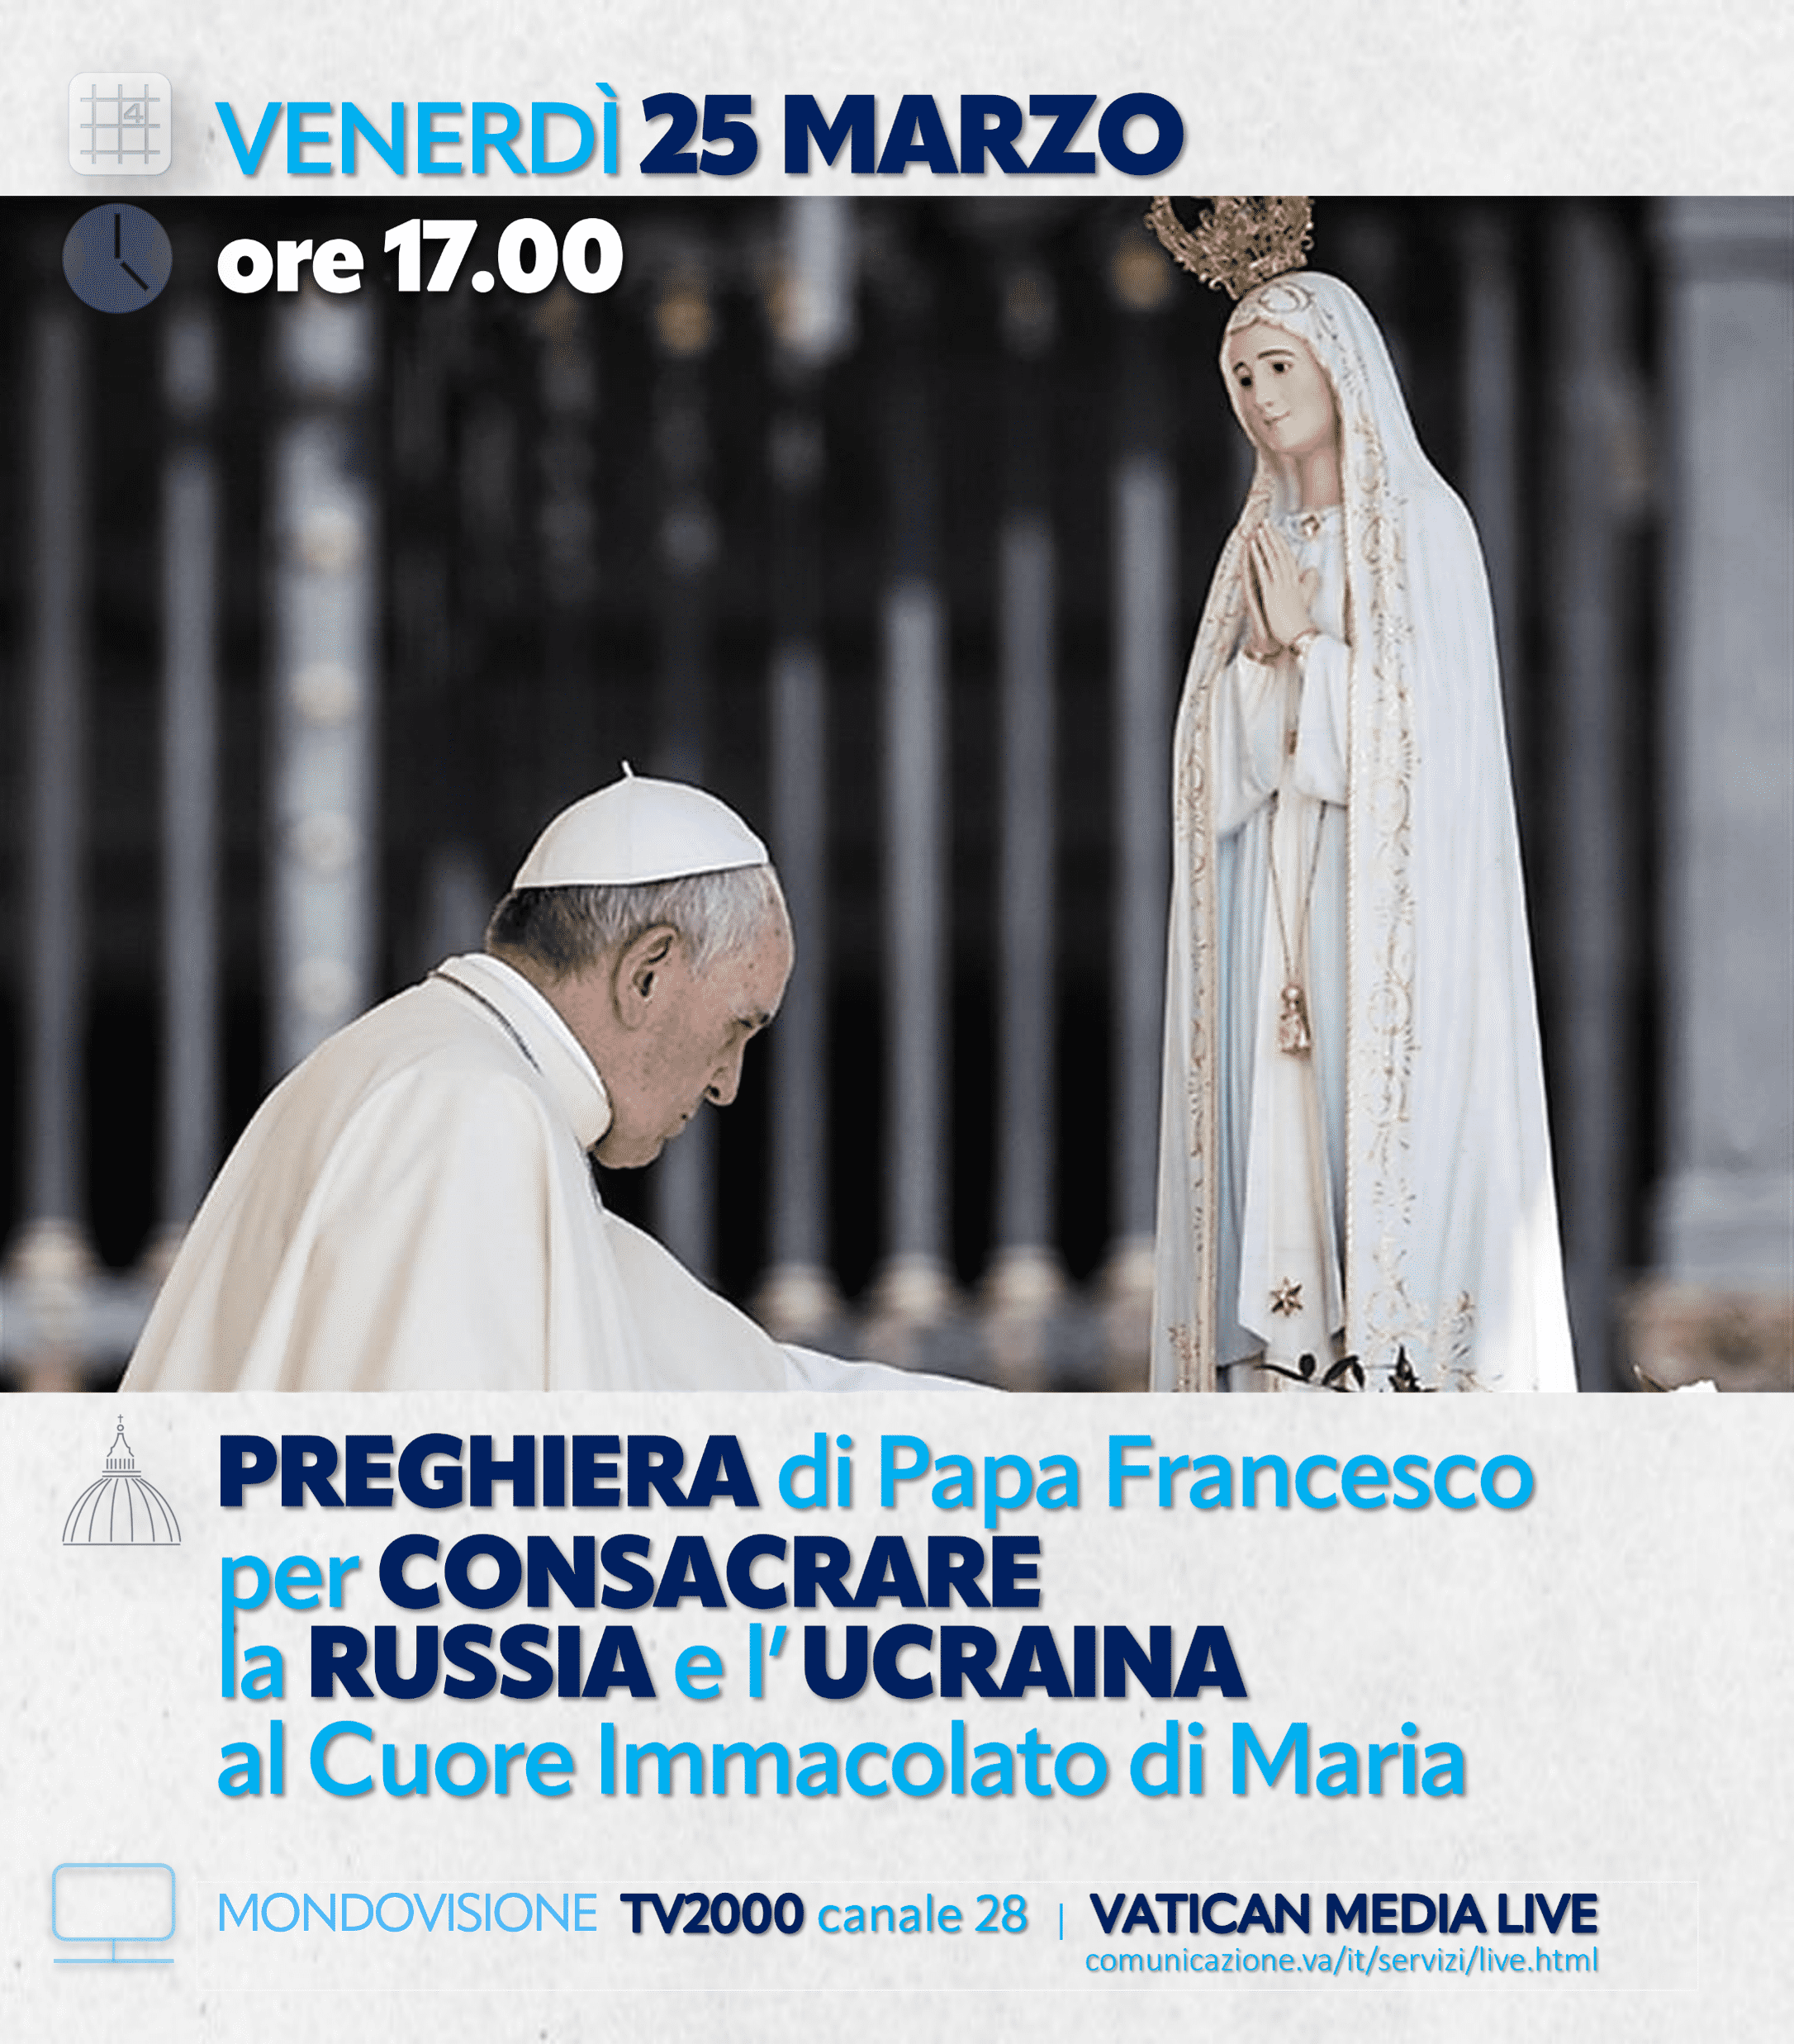 25 marzo: preghiera per la pace e consacrazione a Maria